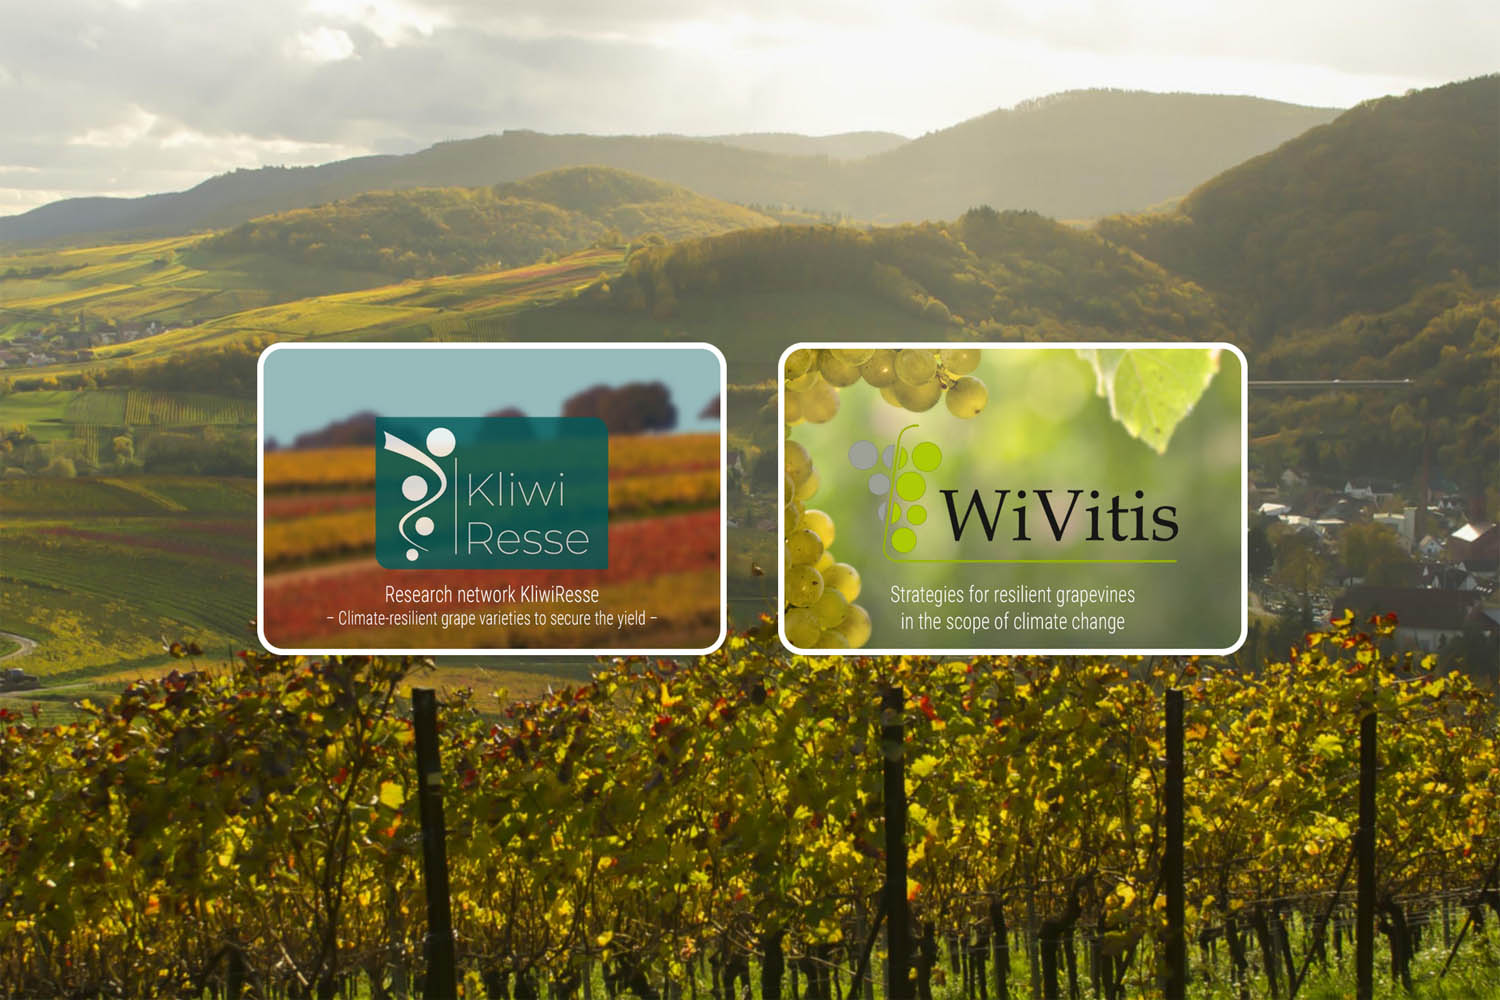 Startseite interreg-Portal wine-science.eu: das Foto zeigt im Hintergrund einen Blick über die Weinberge bei Albersweiler in der Südpfalz